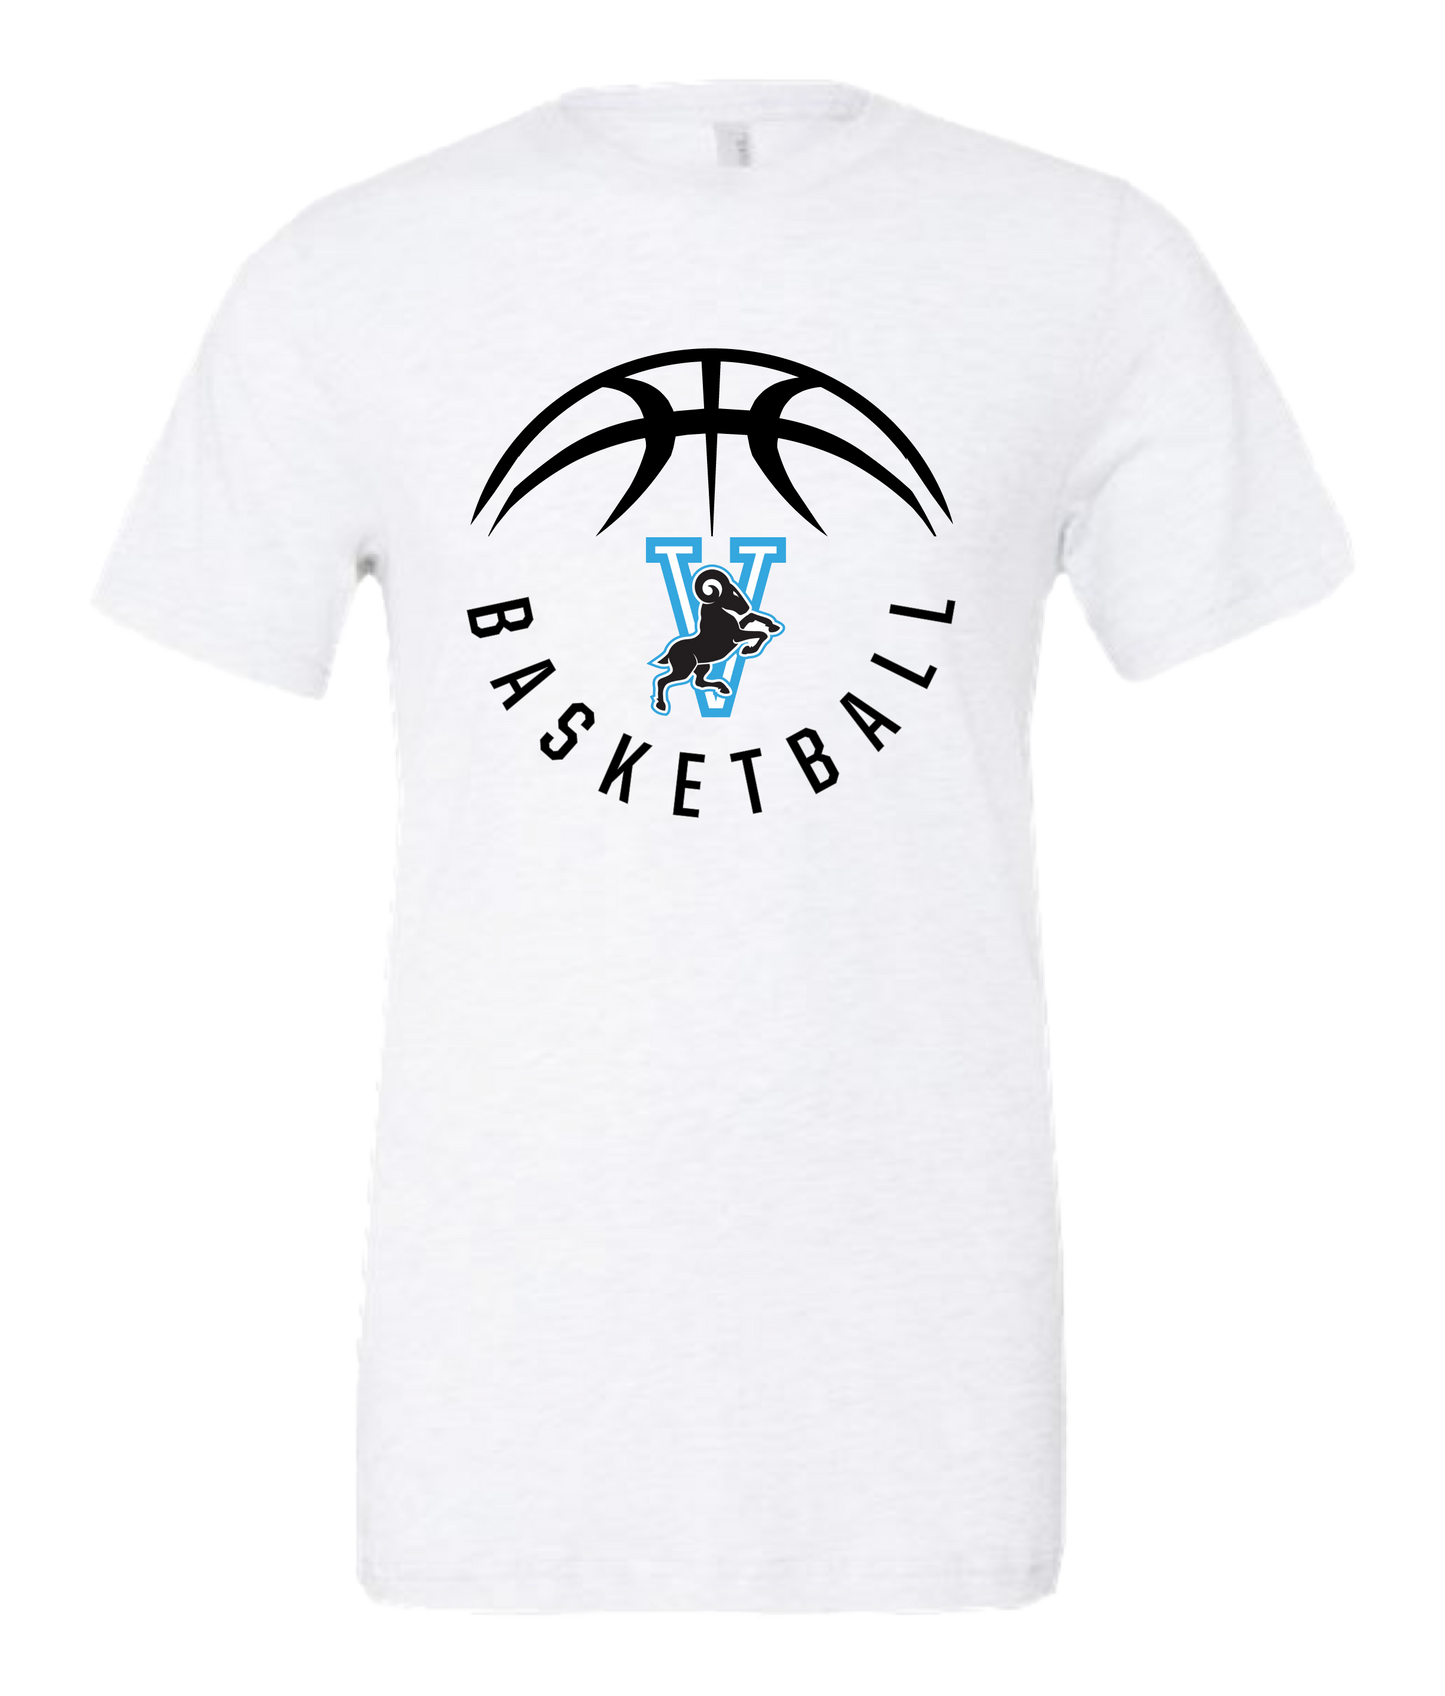 VFS Basketball t-shirt